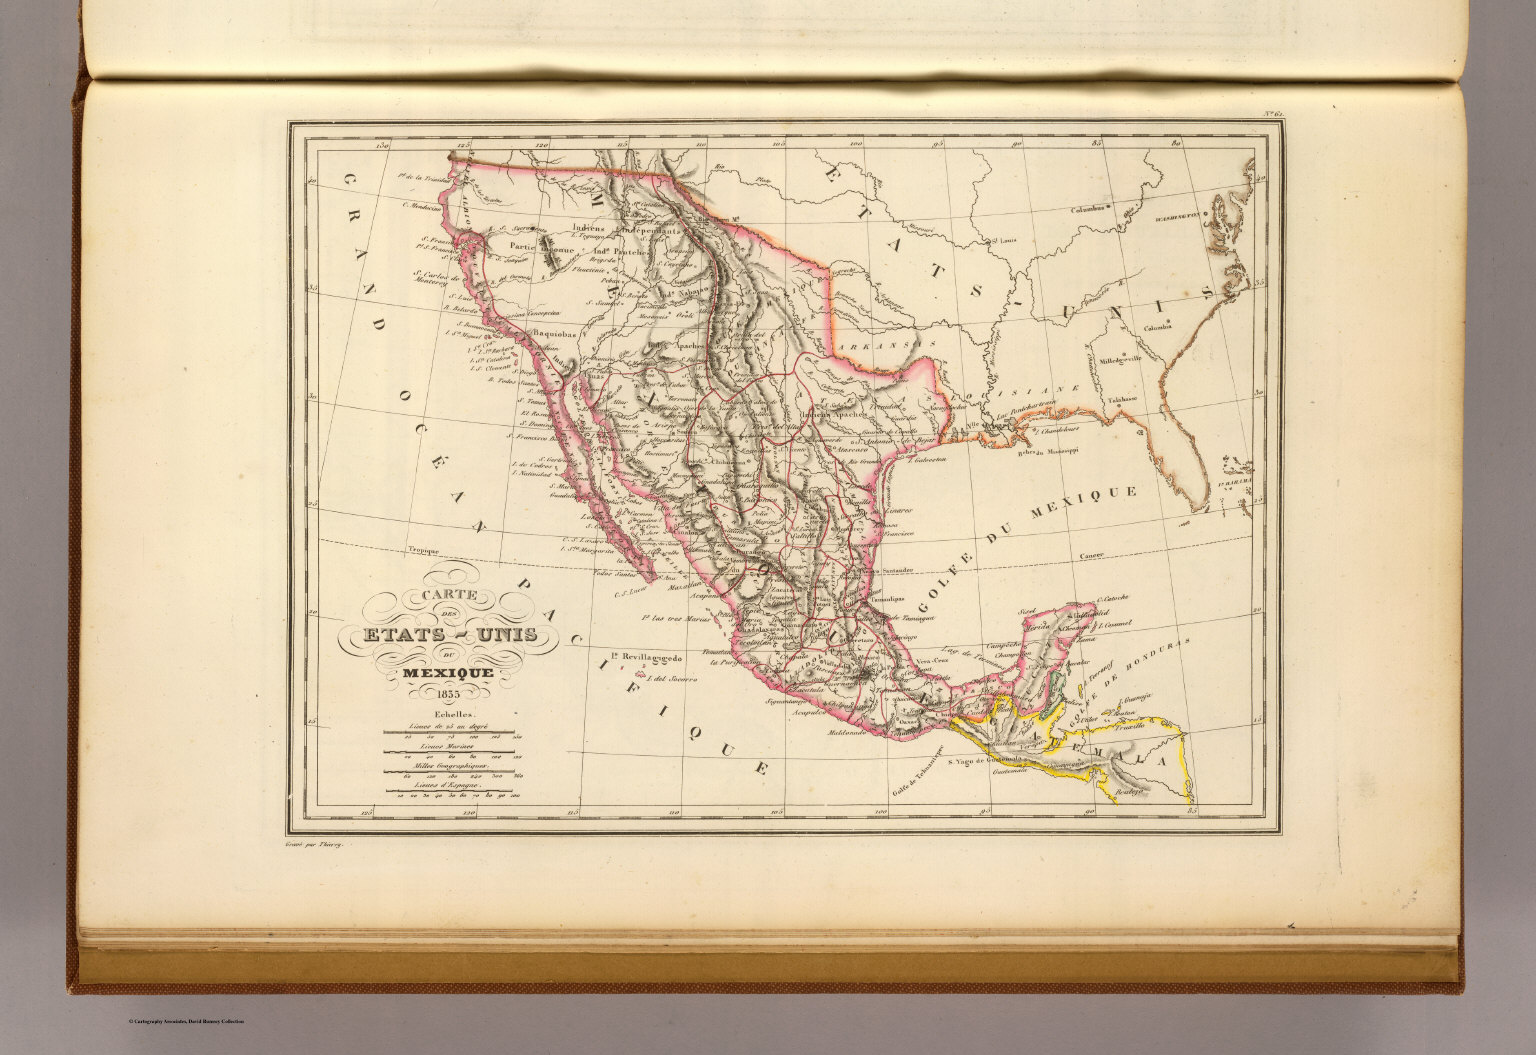 Etats-Unis du Mexique, 1835. - David Rumsey Historical Map Collection